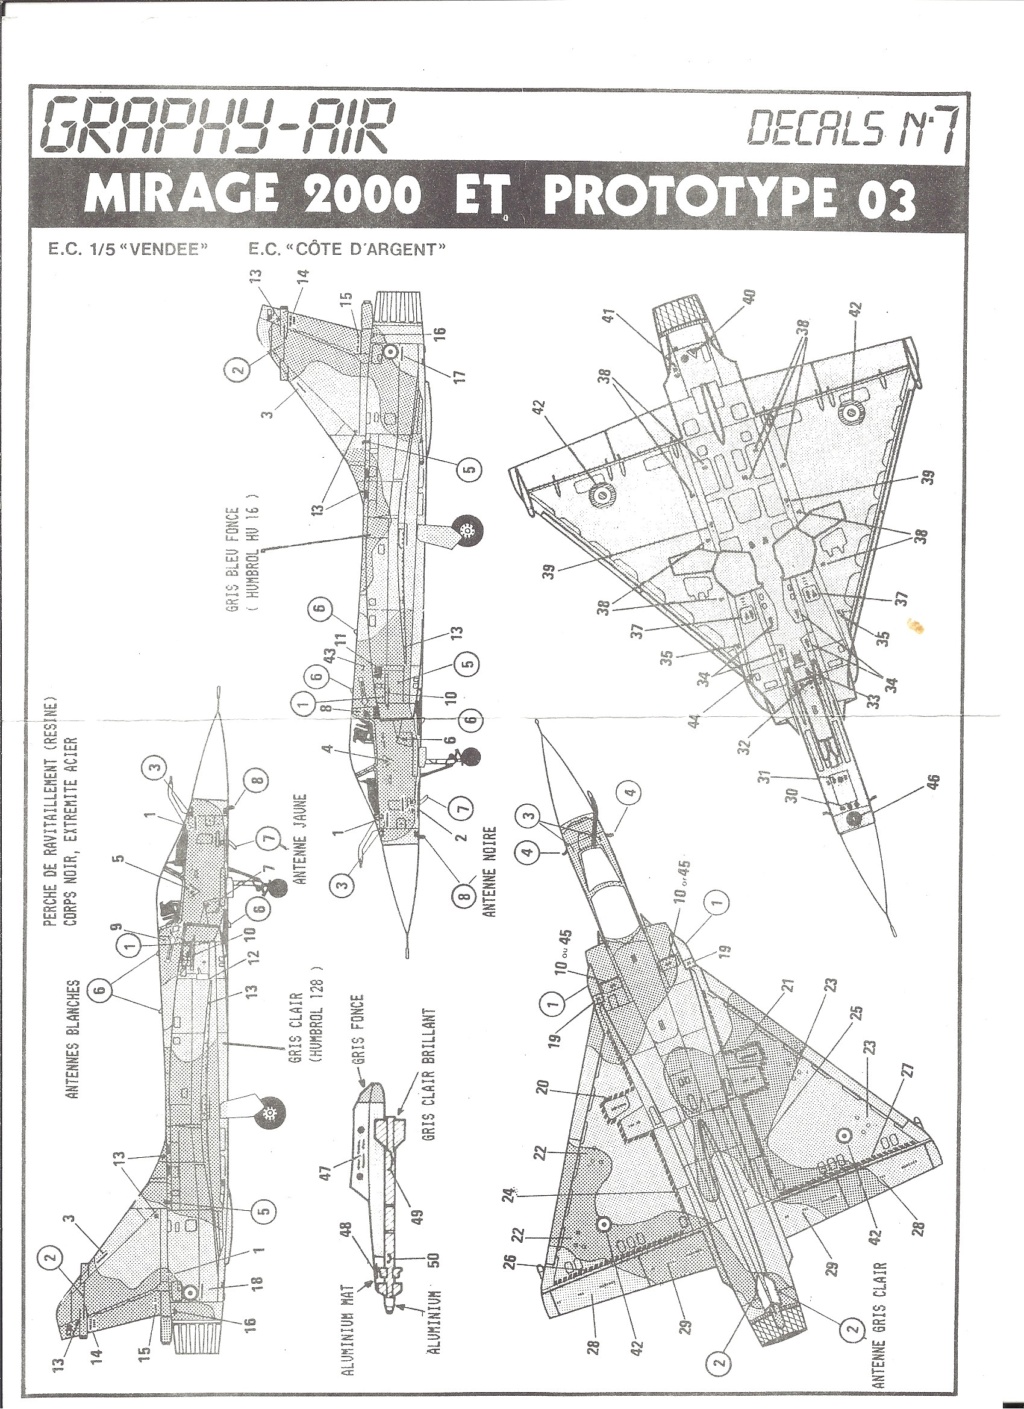 graphy air - [GRAPHY-AIR] Planche de décals  DASSAULT MIRAGE 2000 C et prototype 03 Réf DECALS n°7 1/72ème Graphy10